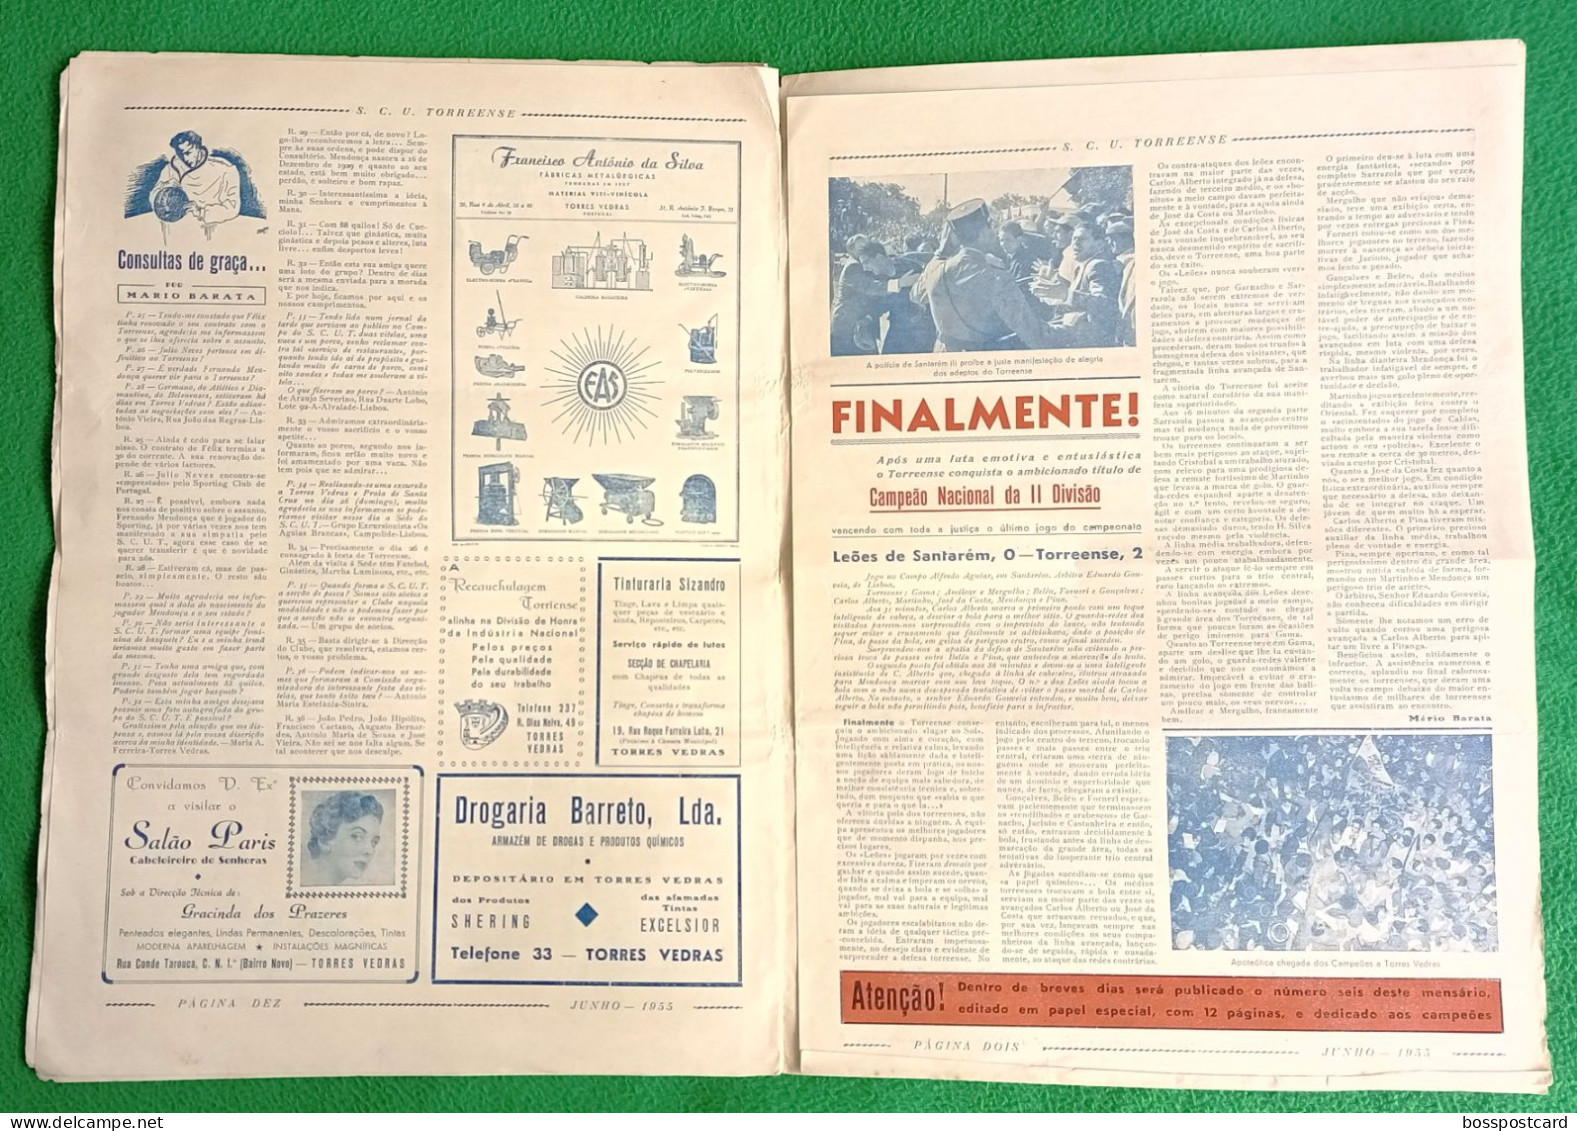 Torres Vedras - Jornal do Torrense Nº 6, Junho de 1958 - Imprensa - Portugal